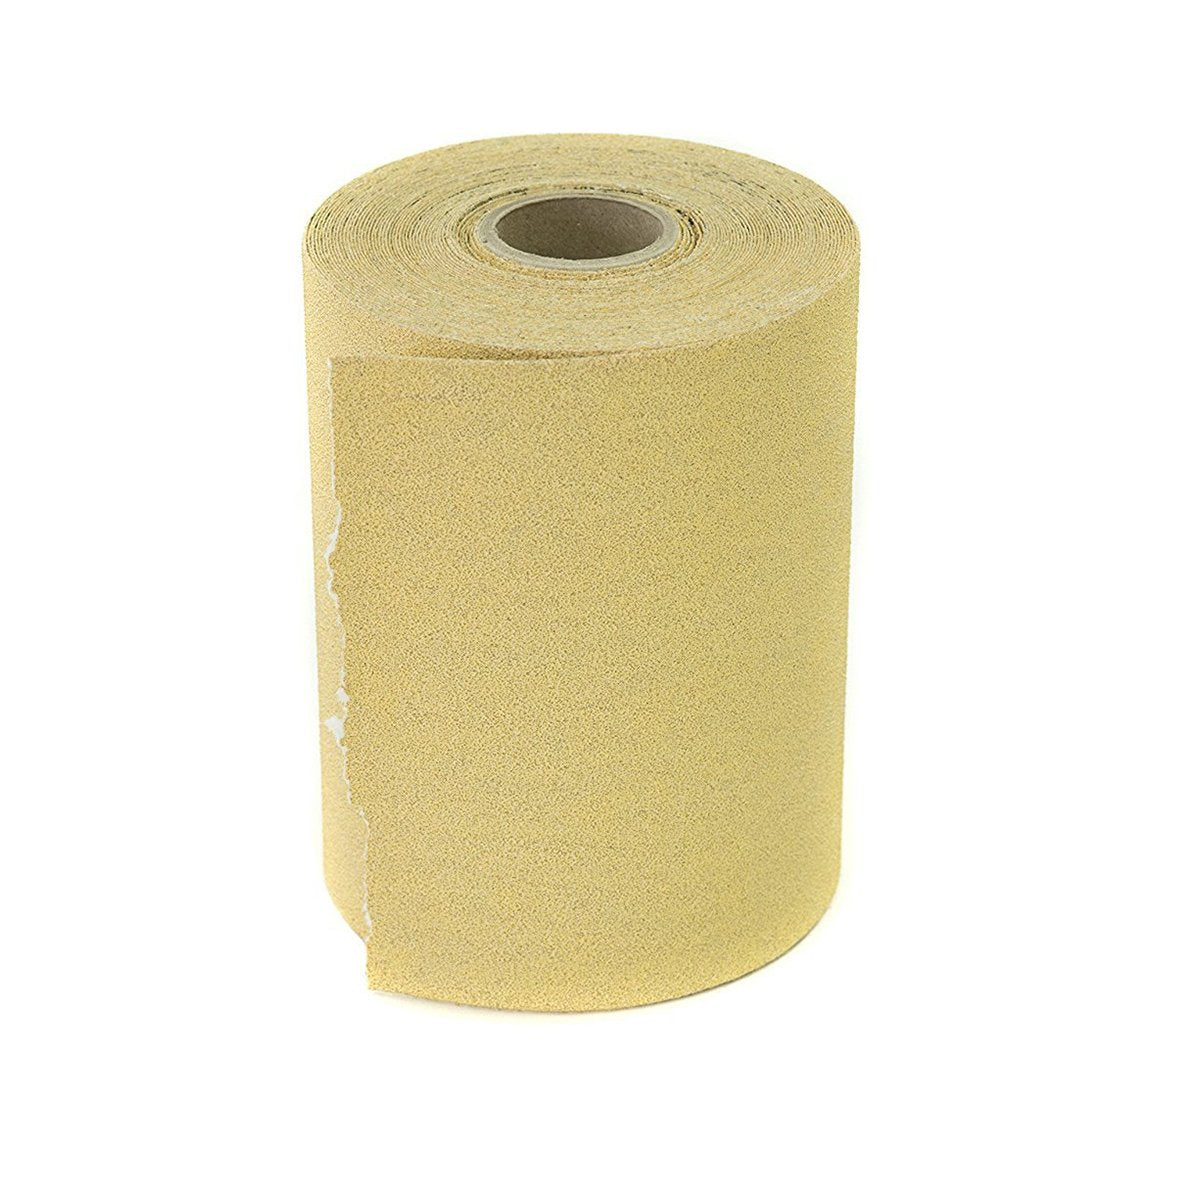 Mirka Gold PSA-Backed Roll Abrasive Paper